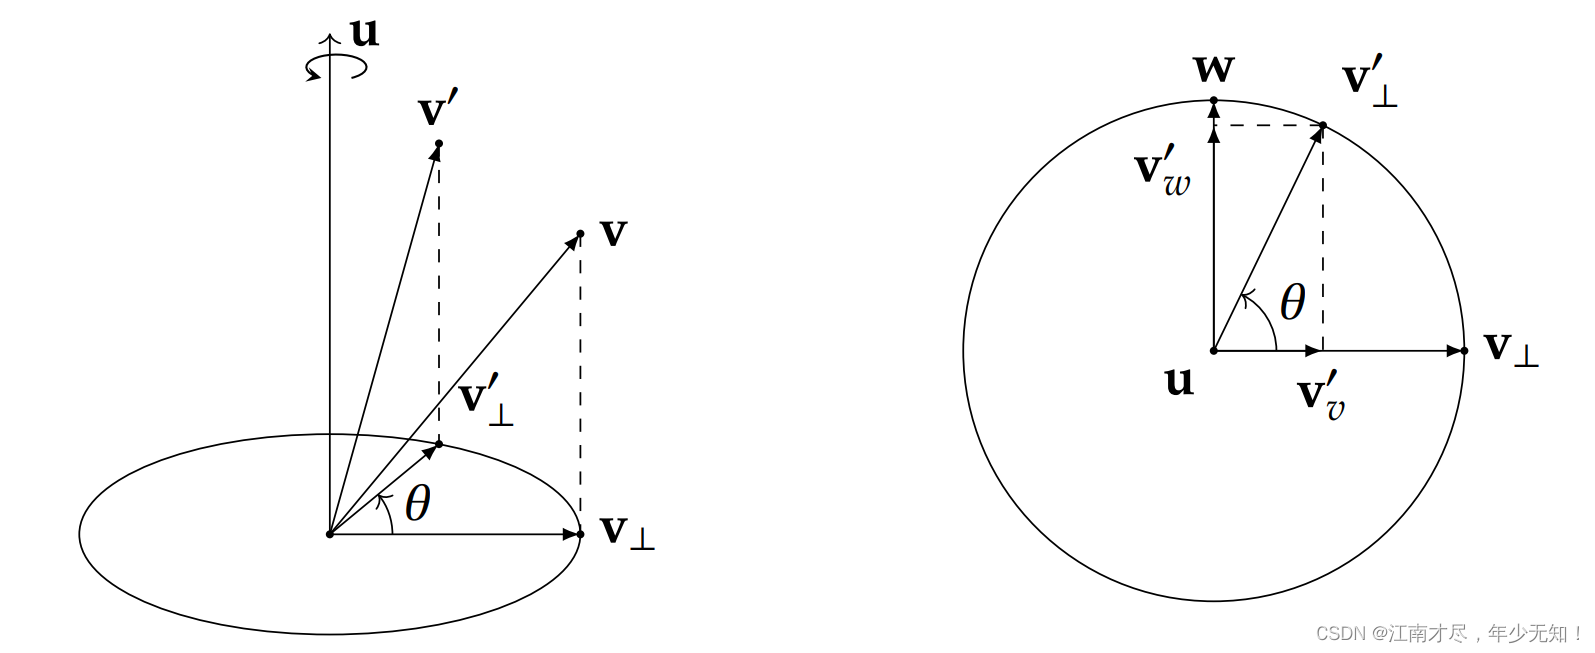 史上最简SLAM零基础解读(8.1) - 旋转矩阵、旋转向量、欧拉角推导与相互转换